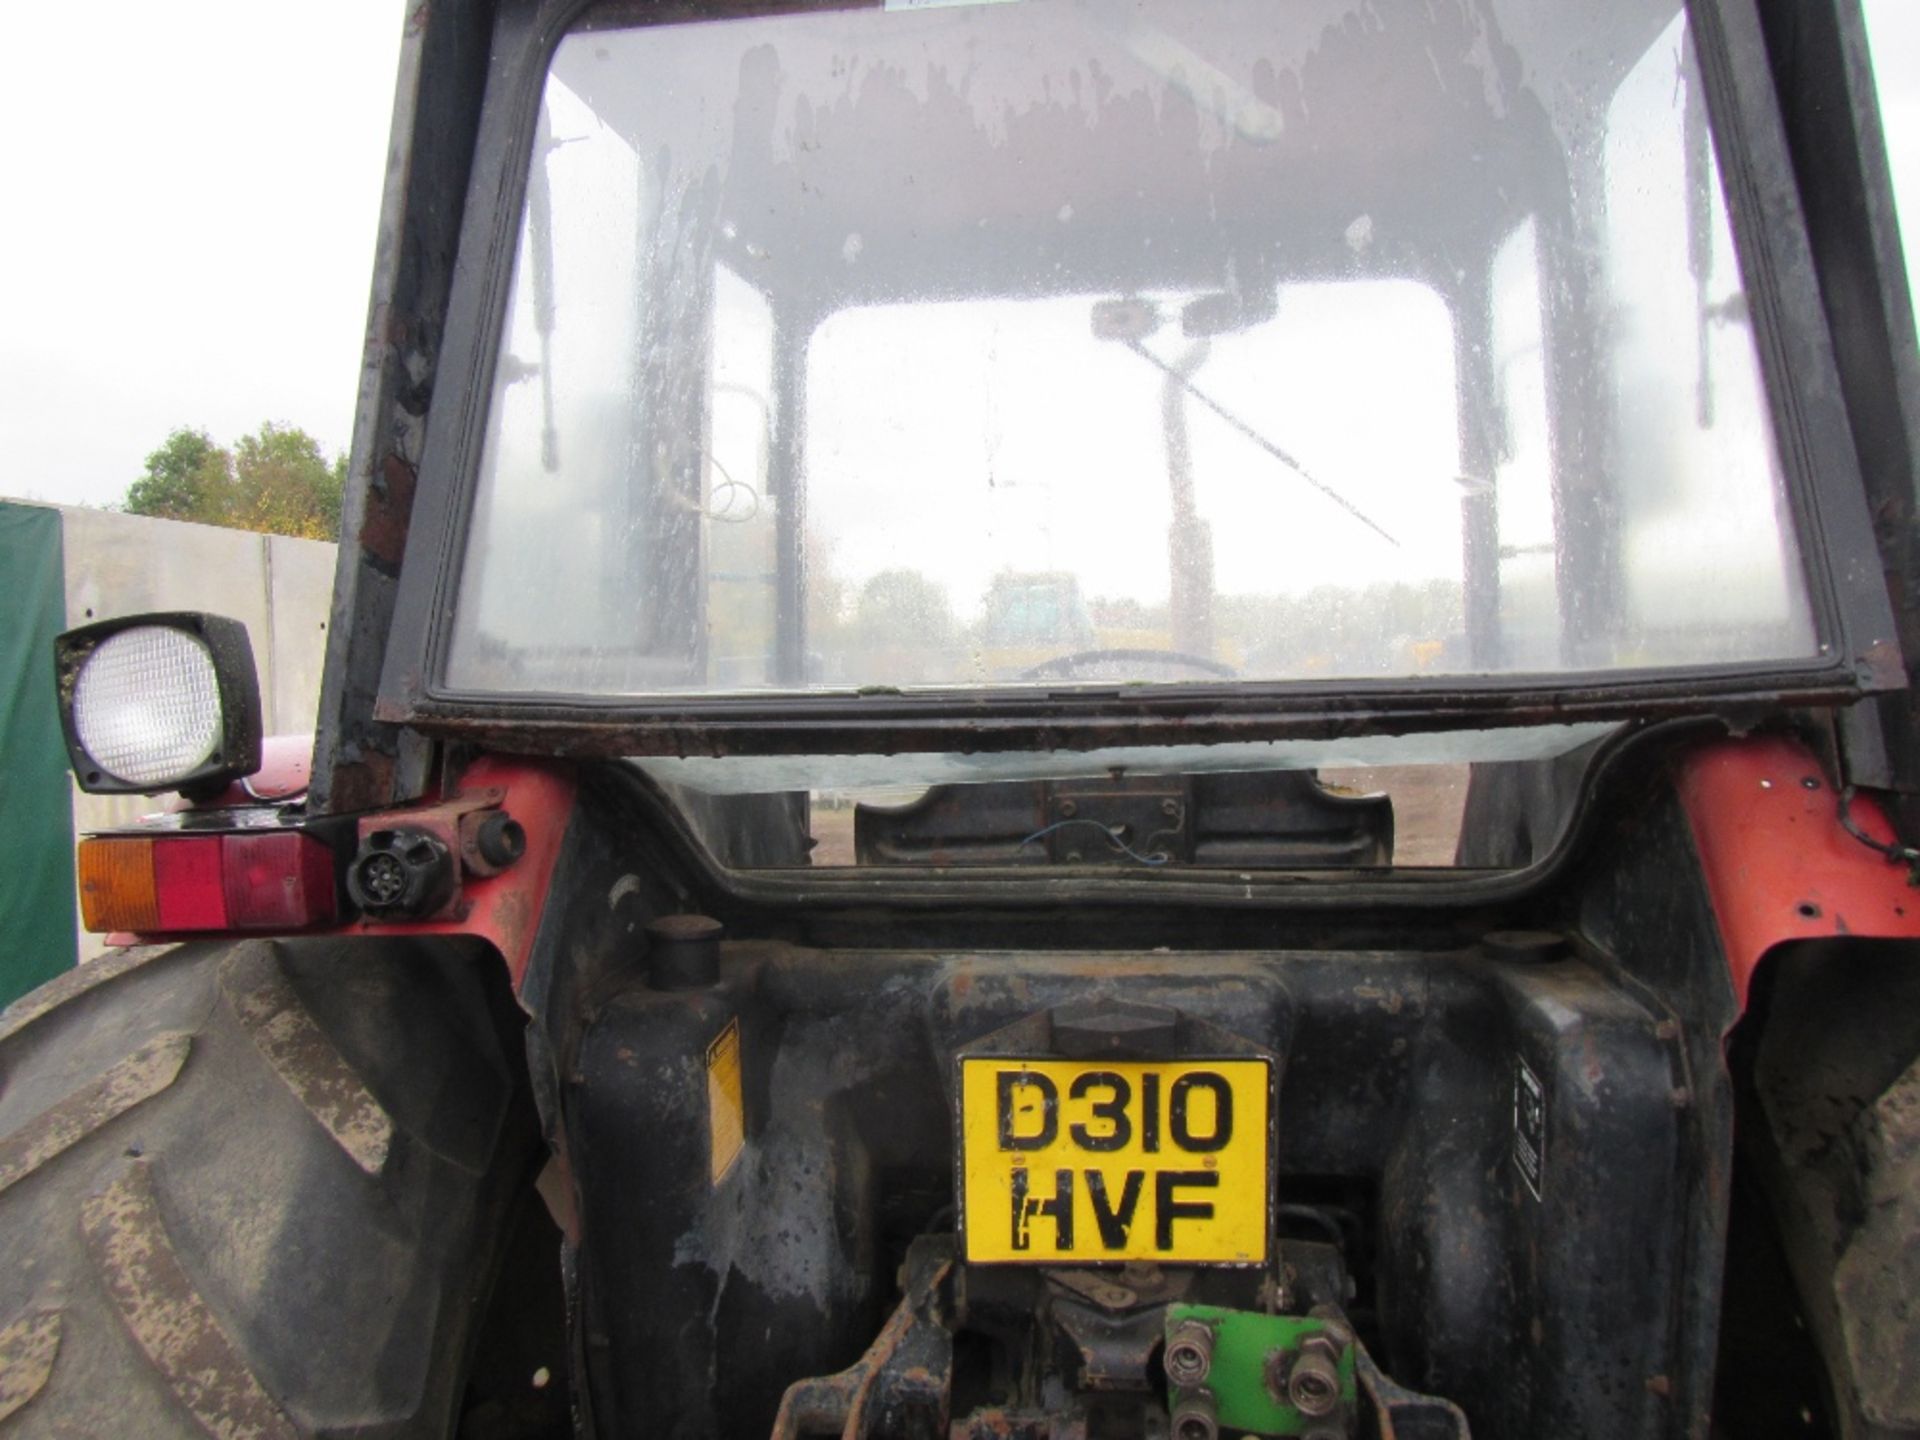 Case International 885 LP 4wd Tractor Reg No D310 HVF - Image 8 of 13